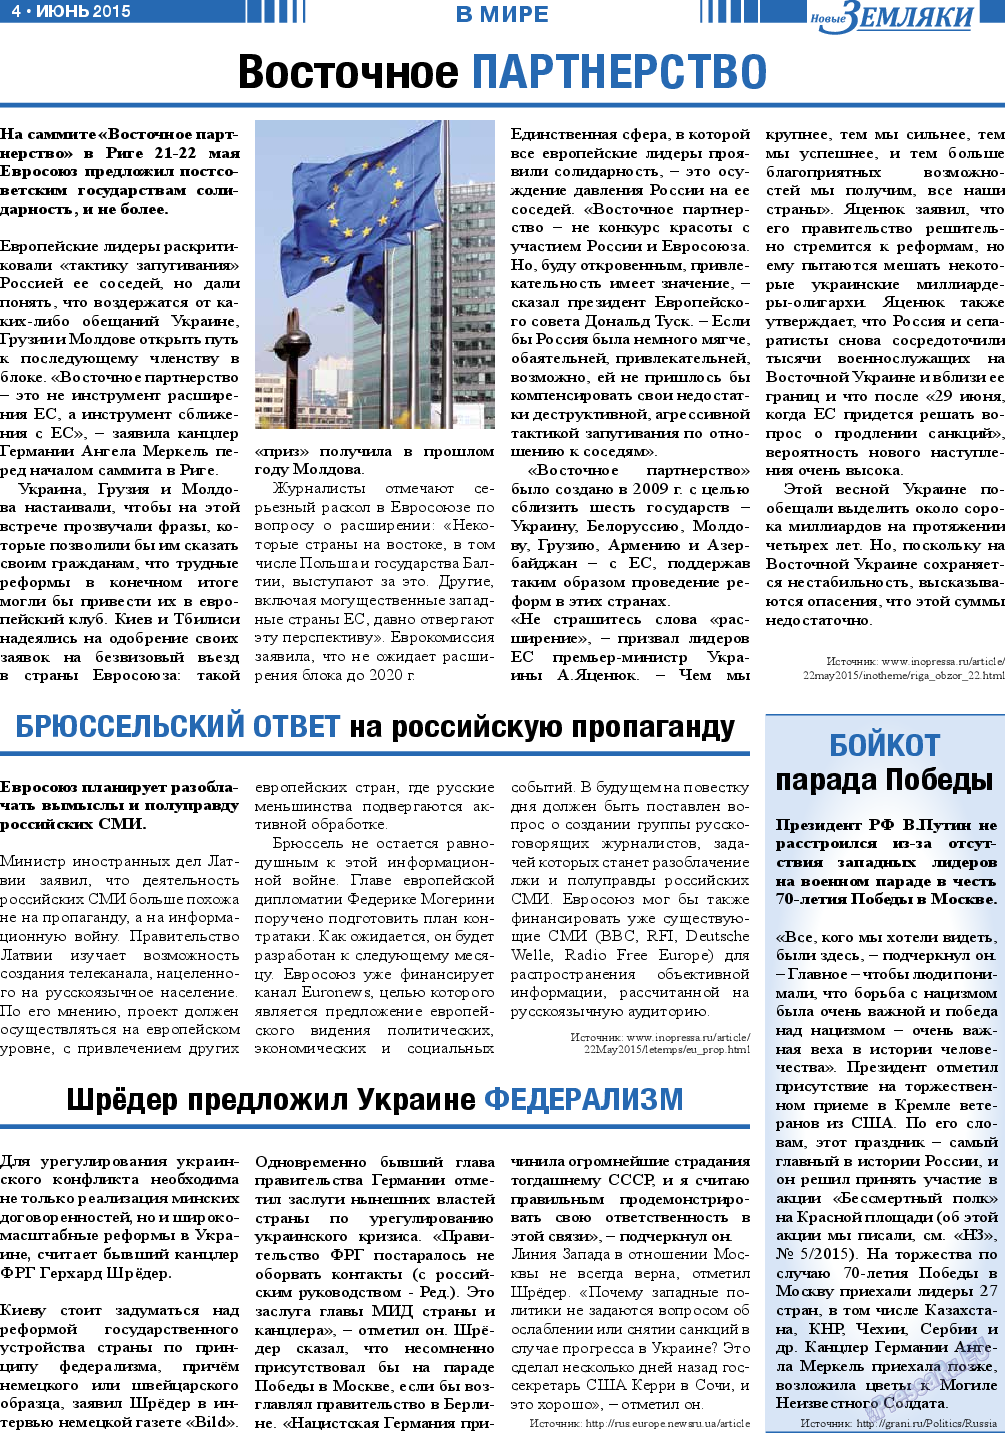 Новые Земляки, газета. 2015 №6 стр.4